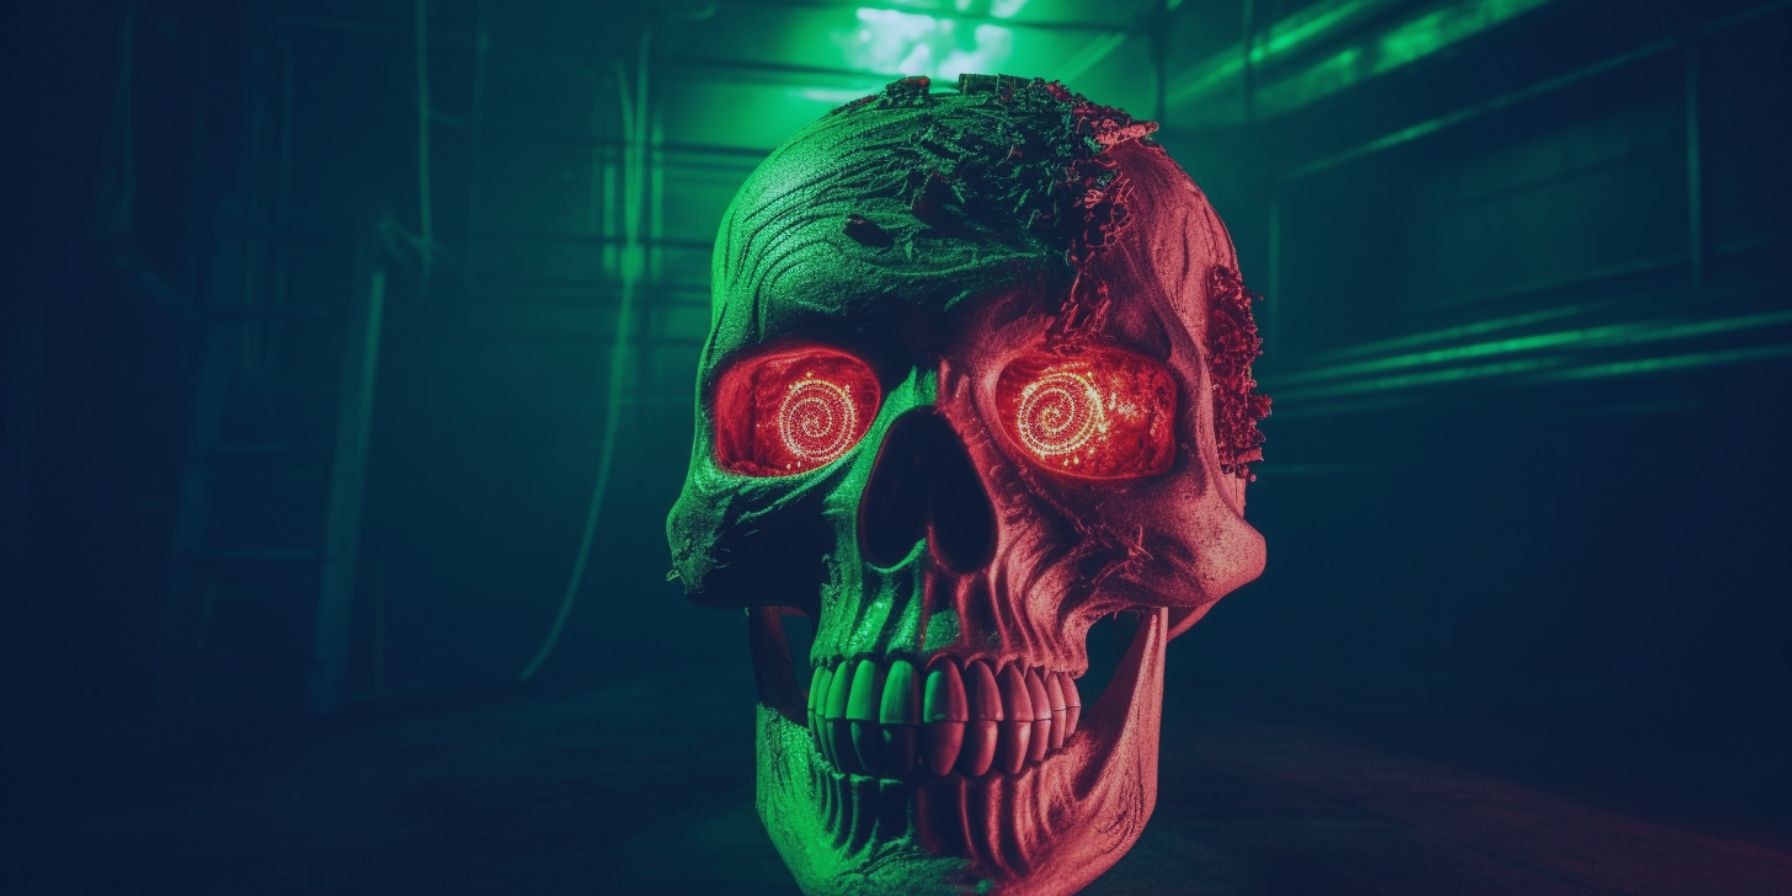 Greenpeace-electronic-waste-artwork-skull-of-satoshi